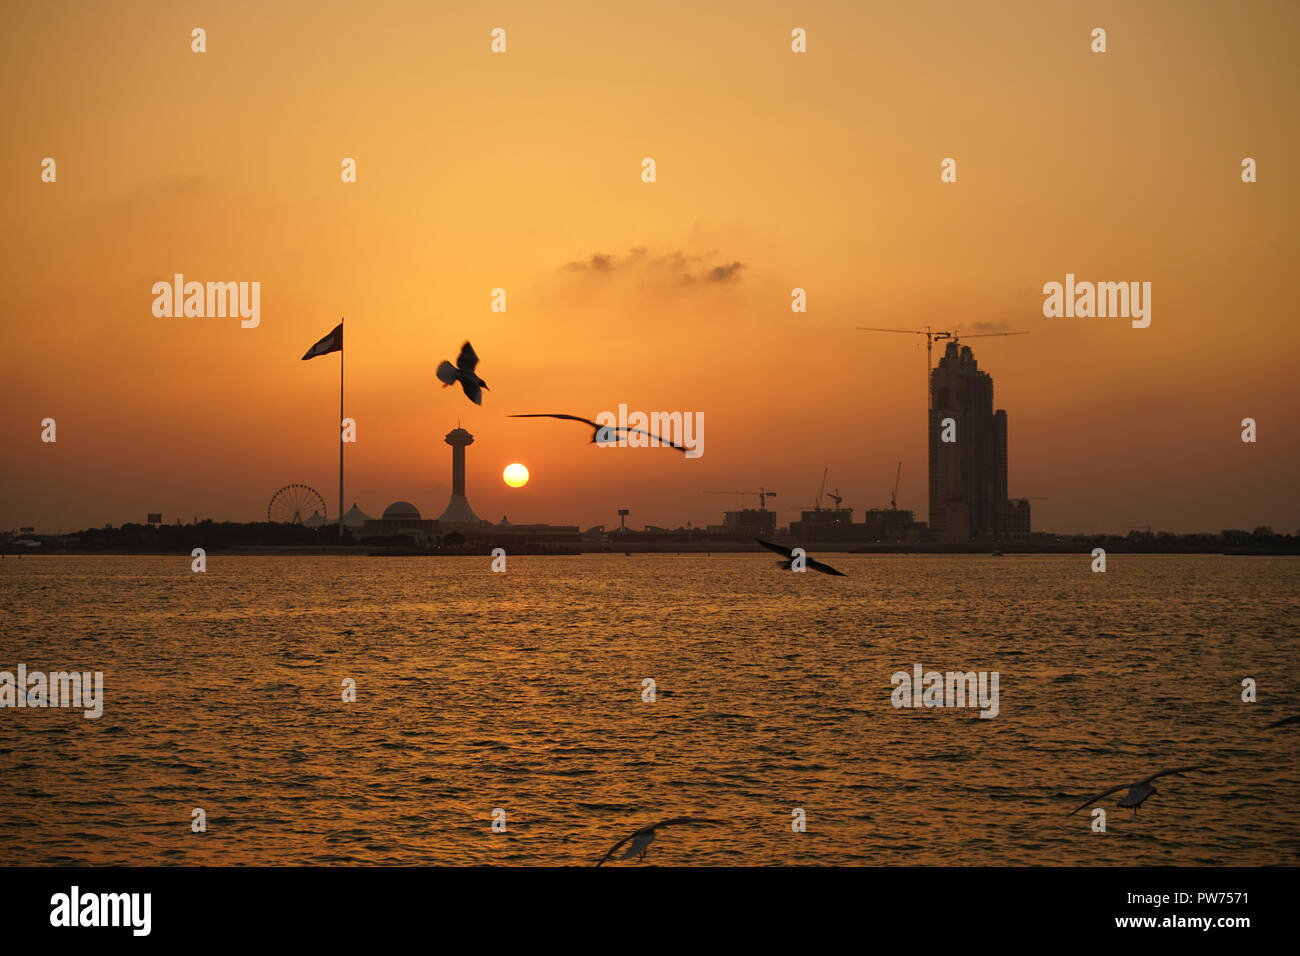 Sonnenuntergang am Corniche Strand, Persischer Golf, Abu Dhabi, Emirats Abu Dhabi, Vereinigte Arabische Emirate Foto Stock